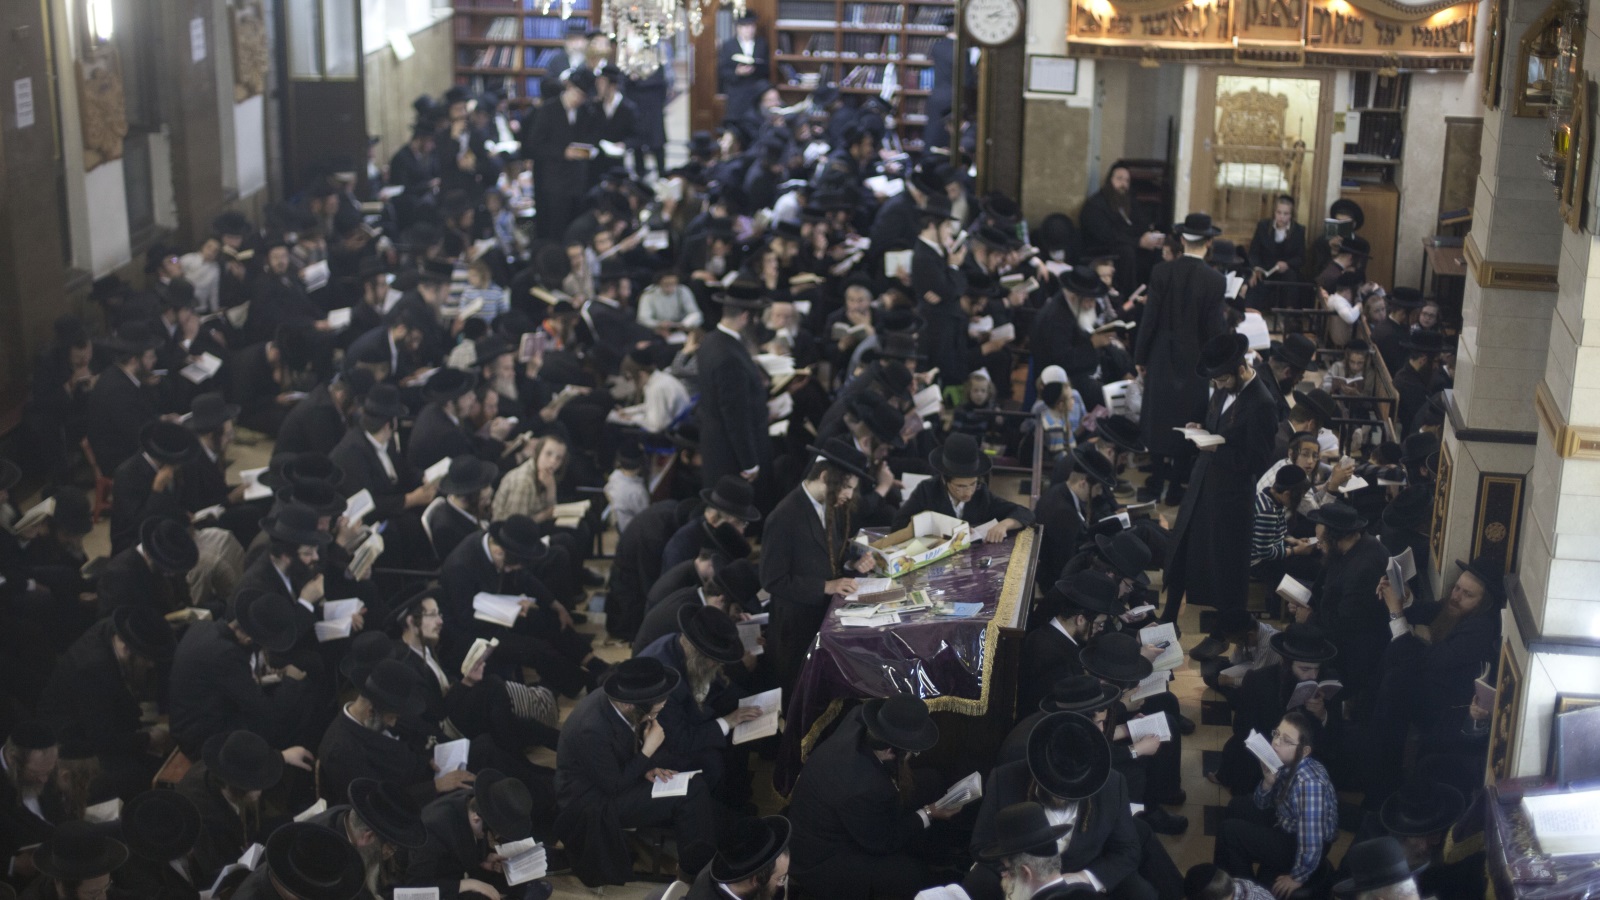  يقضي المتدينون اليهود معظم وقتهم بالمدارس الدينية في تلاوة ودراسة كتبهم المقدسة (غيتي)